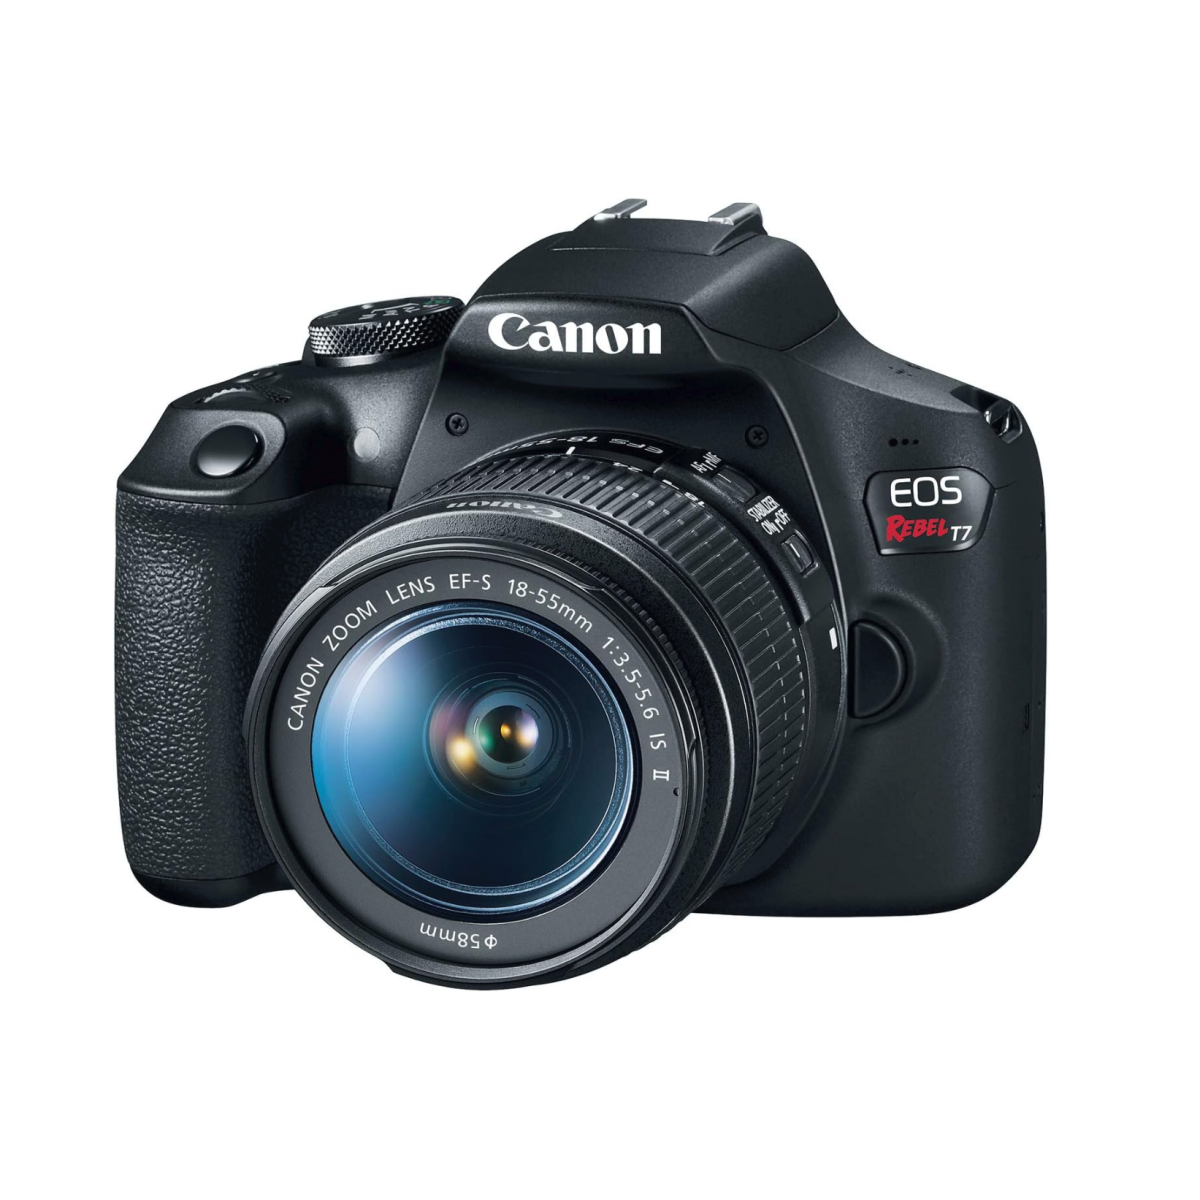 A Canon EOS Rebel T7 DSLR camera